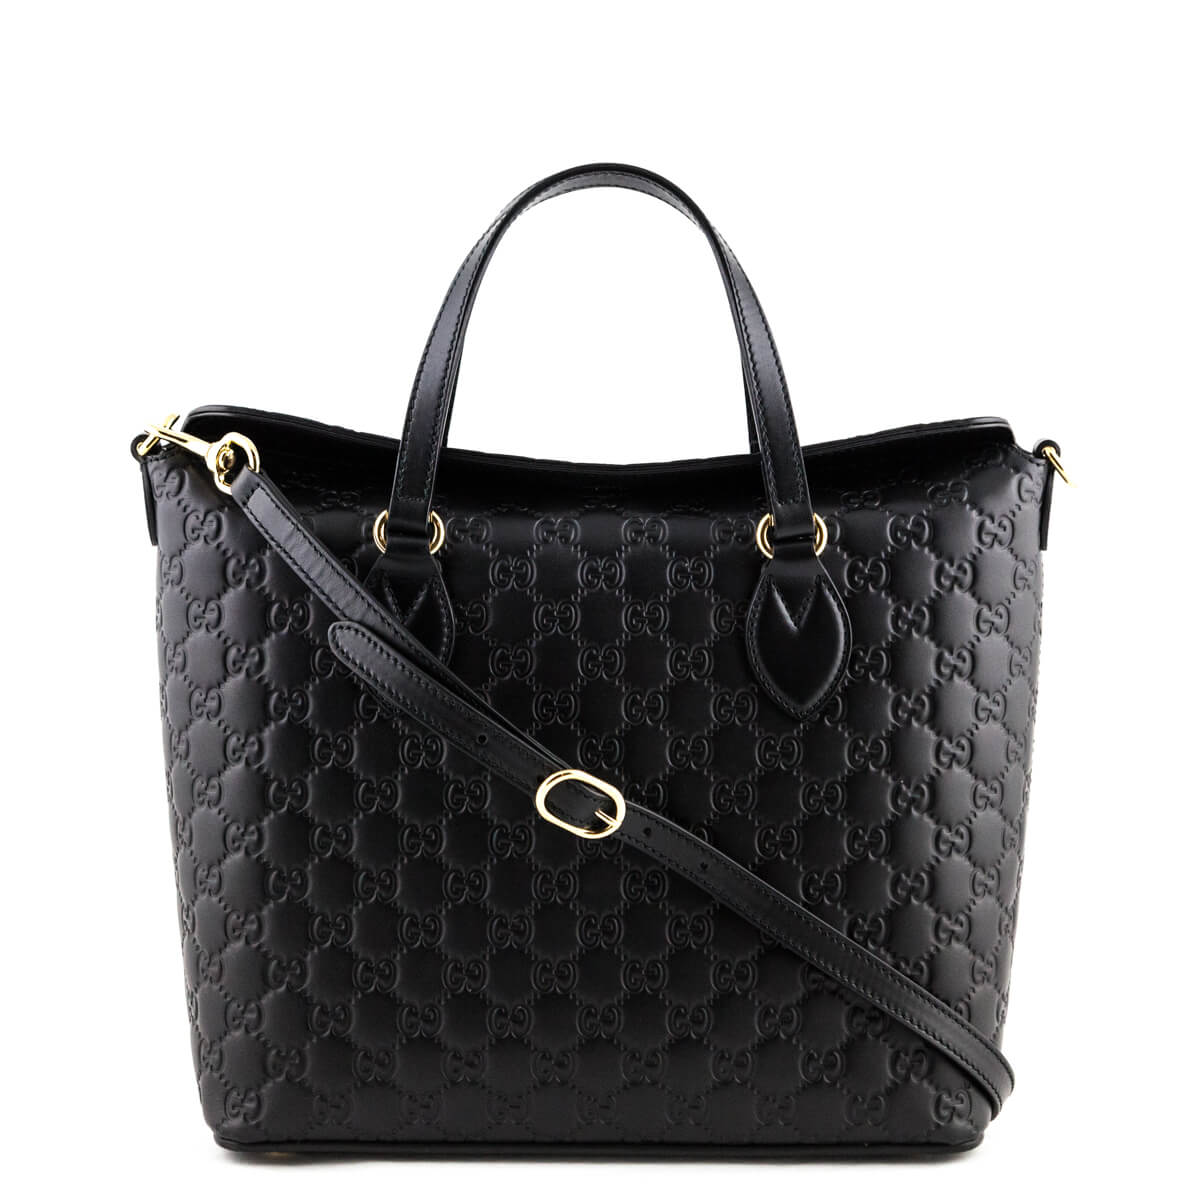 Gucci Black Guccissima Leather Foldover Linea Bag - Preloved Gucci Bag